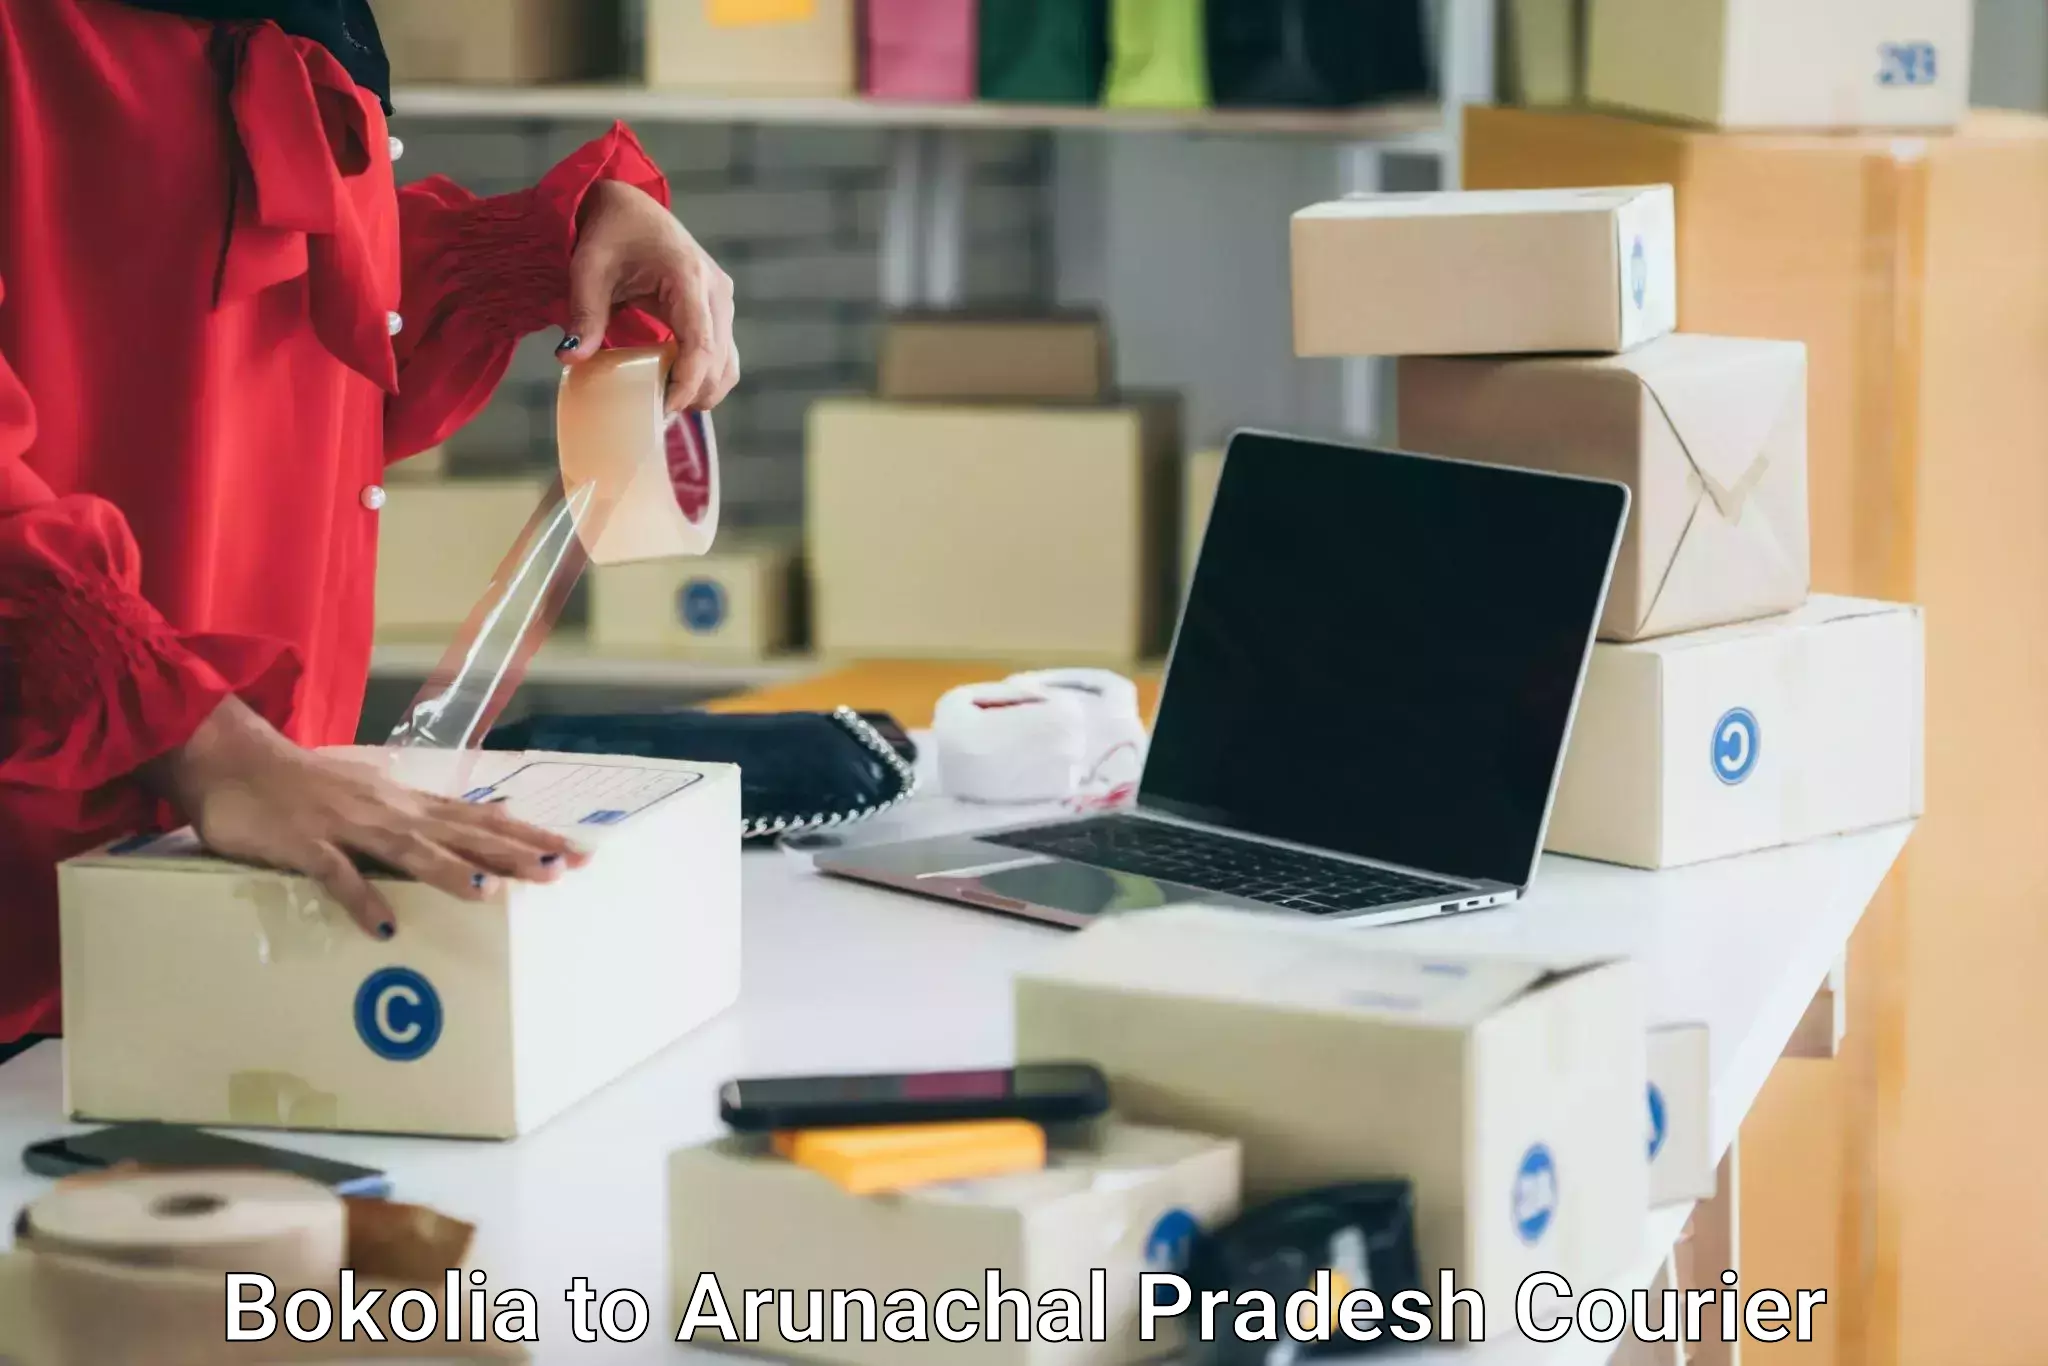 Furniture moving and handling Bokolia to Arunachal Pradesh